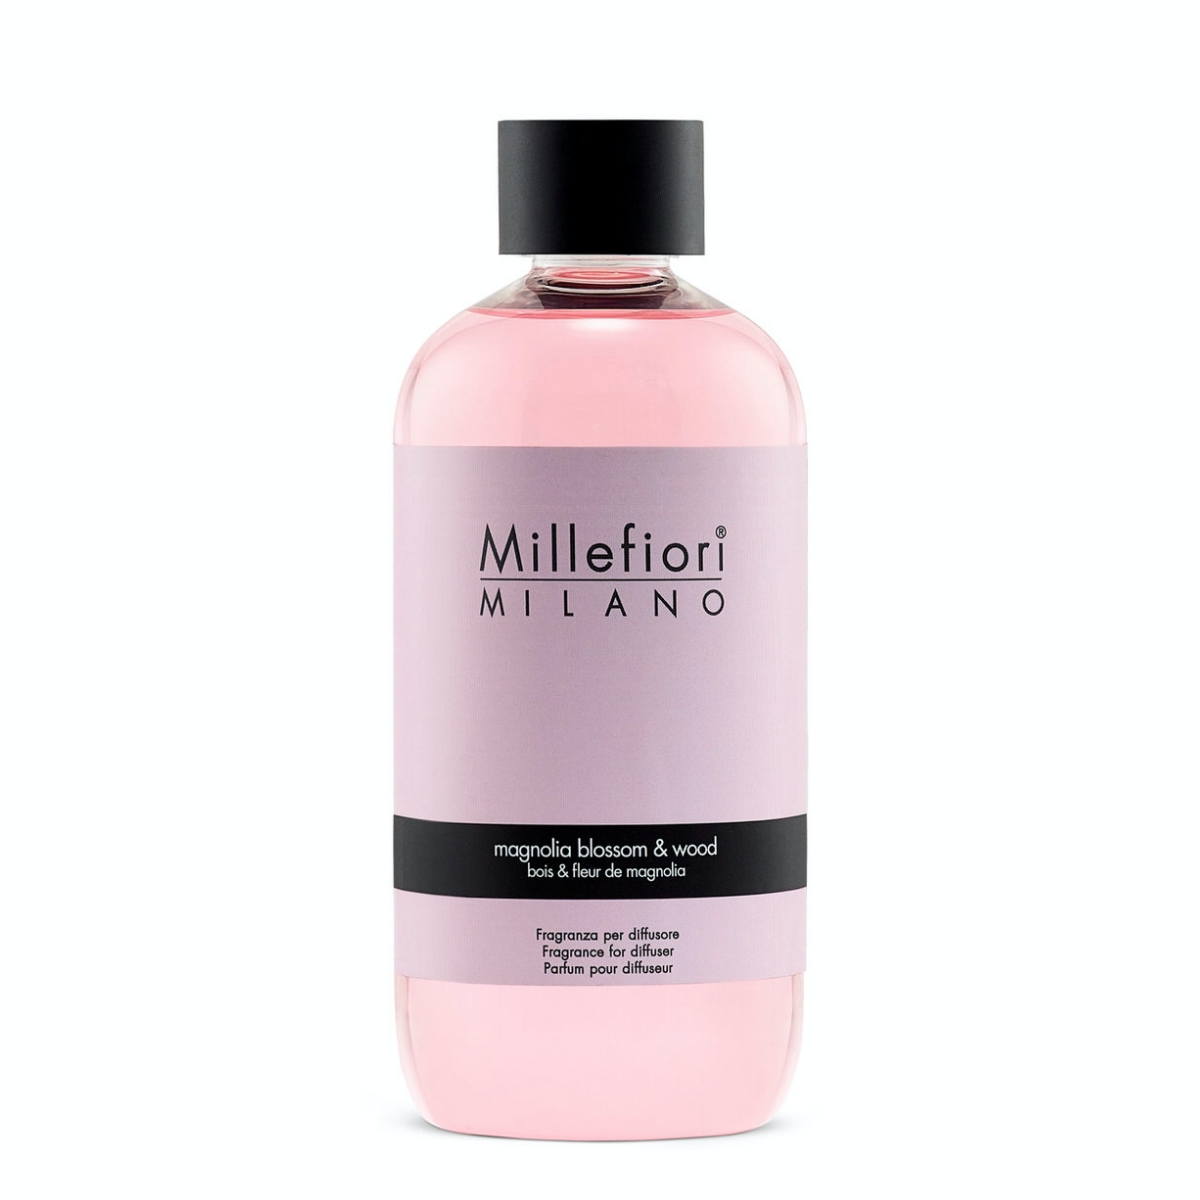 Millefiori Milano NATURAL – MAGNOLIA BLOSSOM & WOOD NÁPLŇ DO DIFUZÉRU 250 ml 250 ml